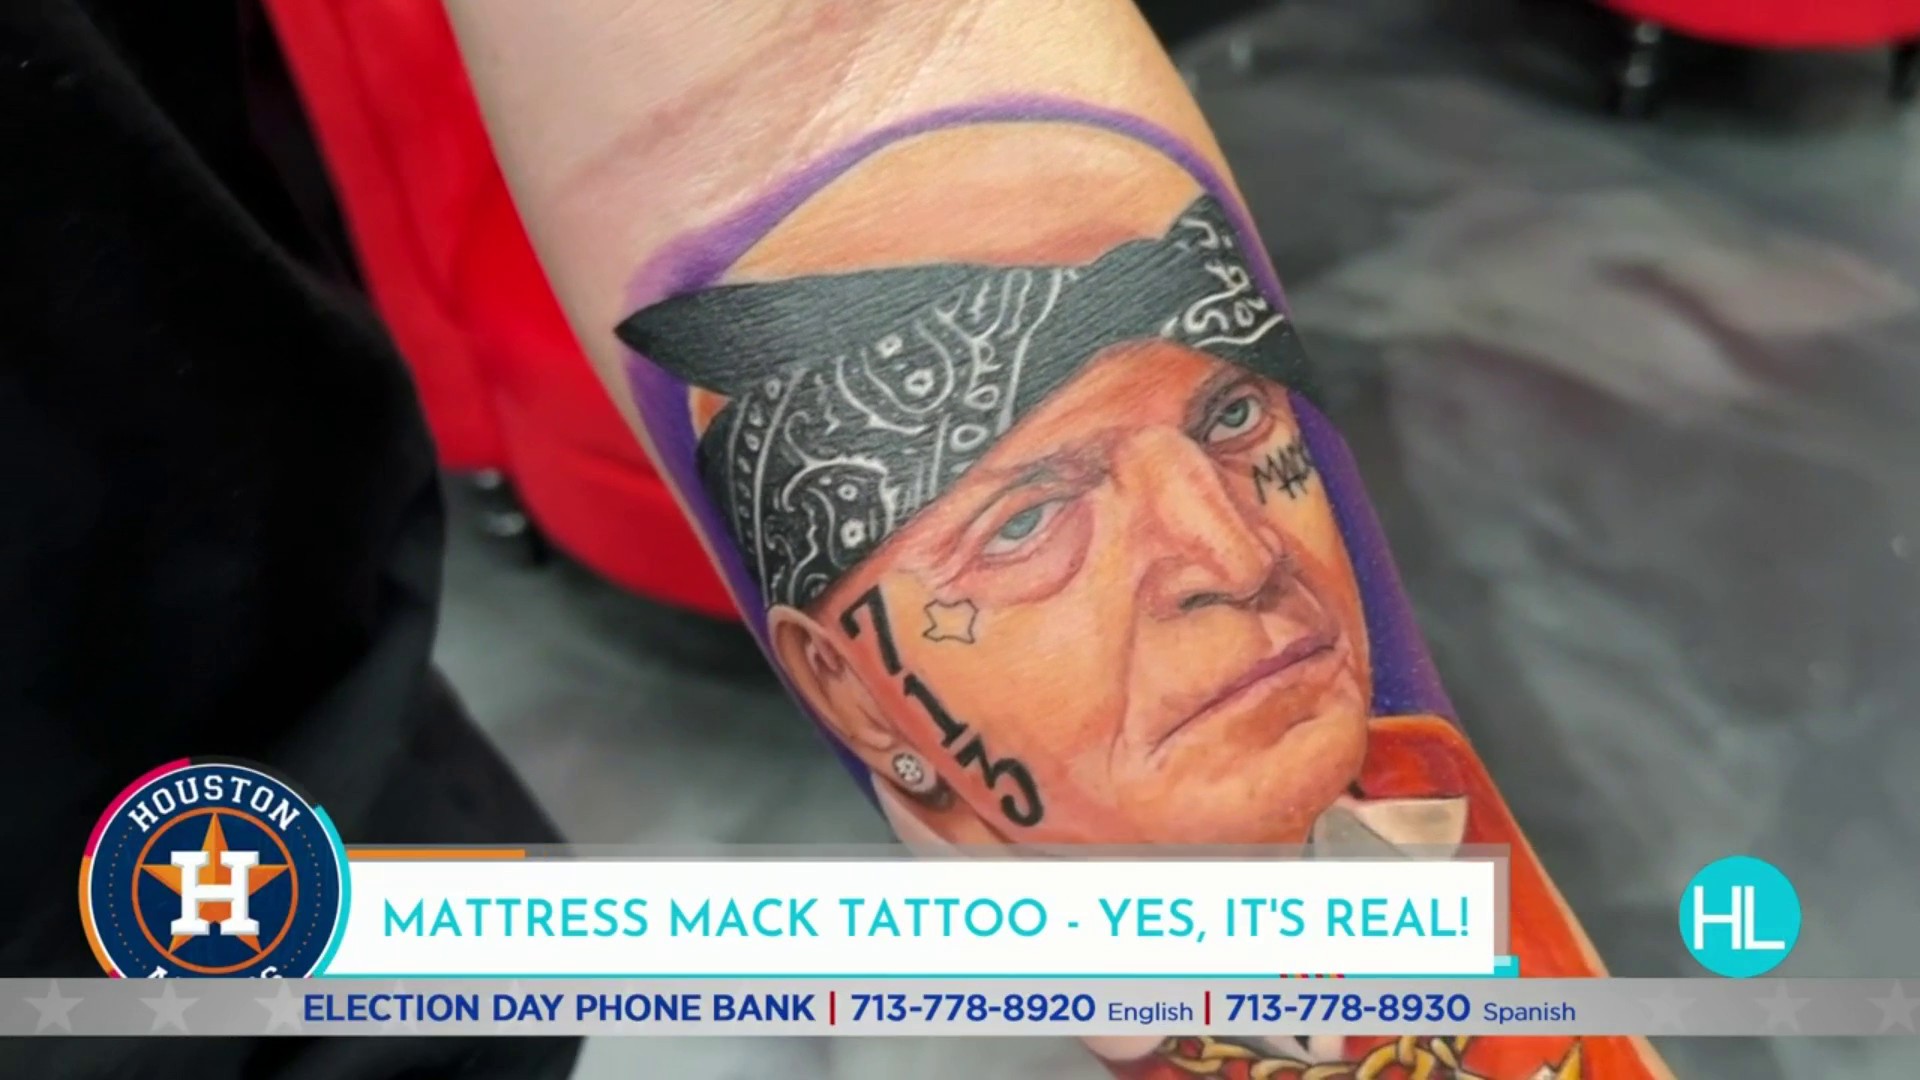 Artist from Atascocita tattoo shop 'Hitlist Ink' creates iconic Mattress Mack  tattoo